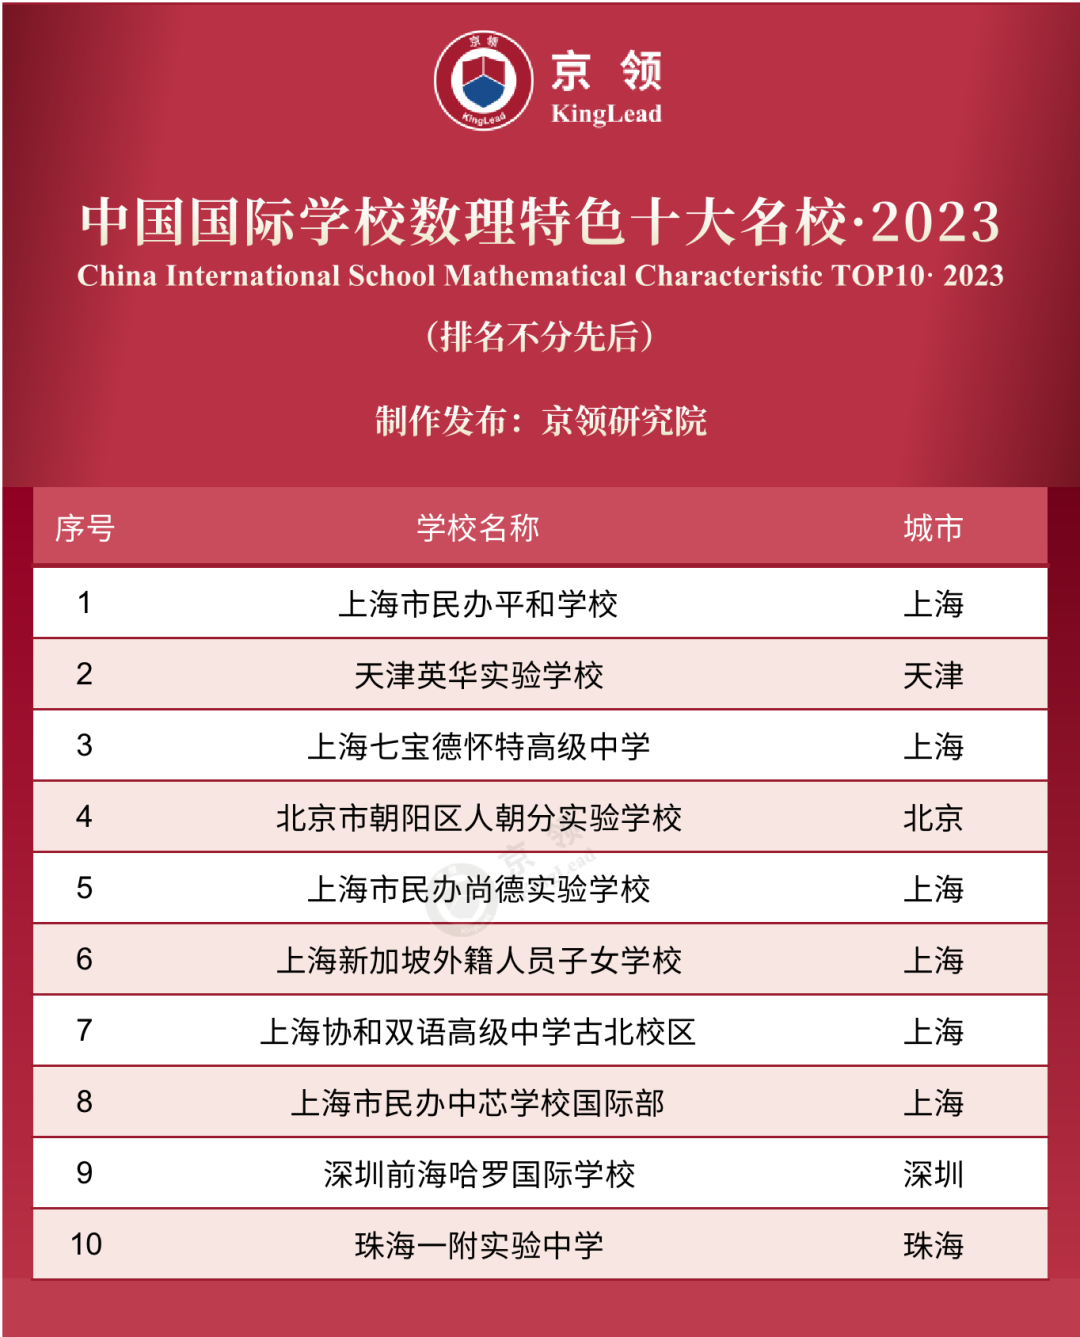 京领2023中国国际学校特色榜发布 英美方向国际学校哪家强  数据 第5张